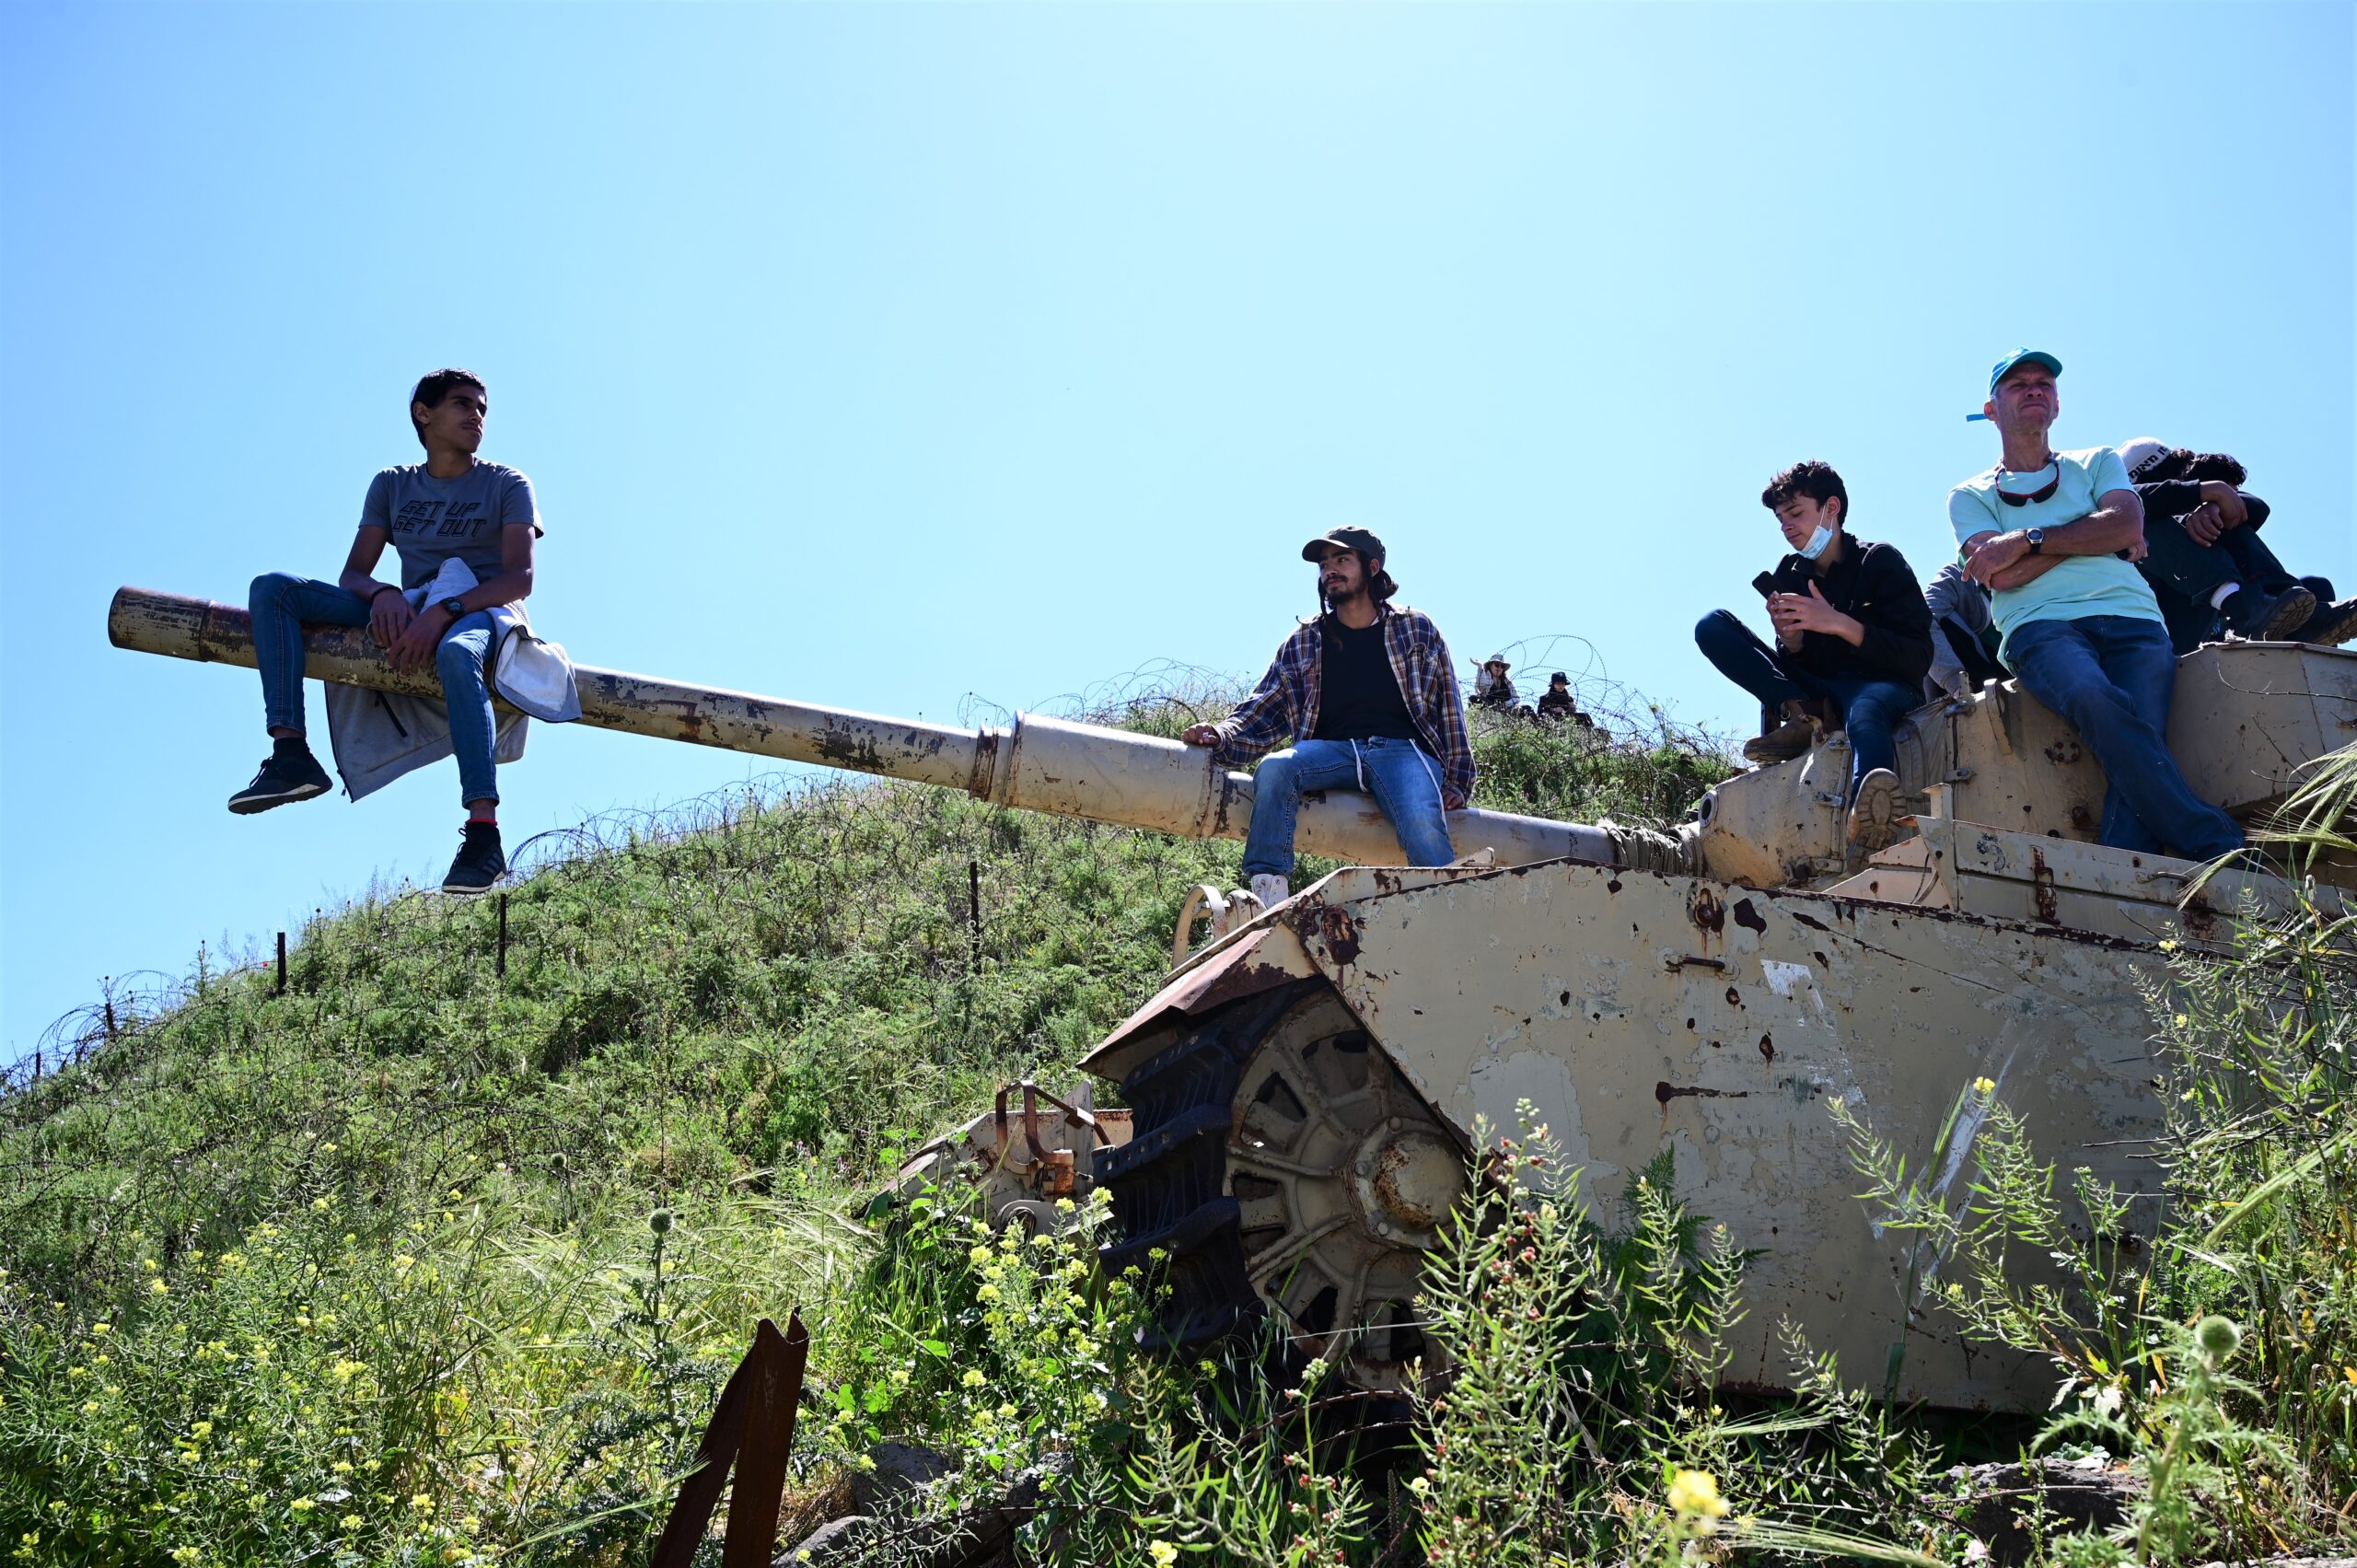 שמים את הצבא במרכז. תלמידים באתר הנצחה ברמת הגולן, אפריל 2021 (צילום: מיכאל גלעדי / פלאש 90)